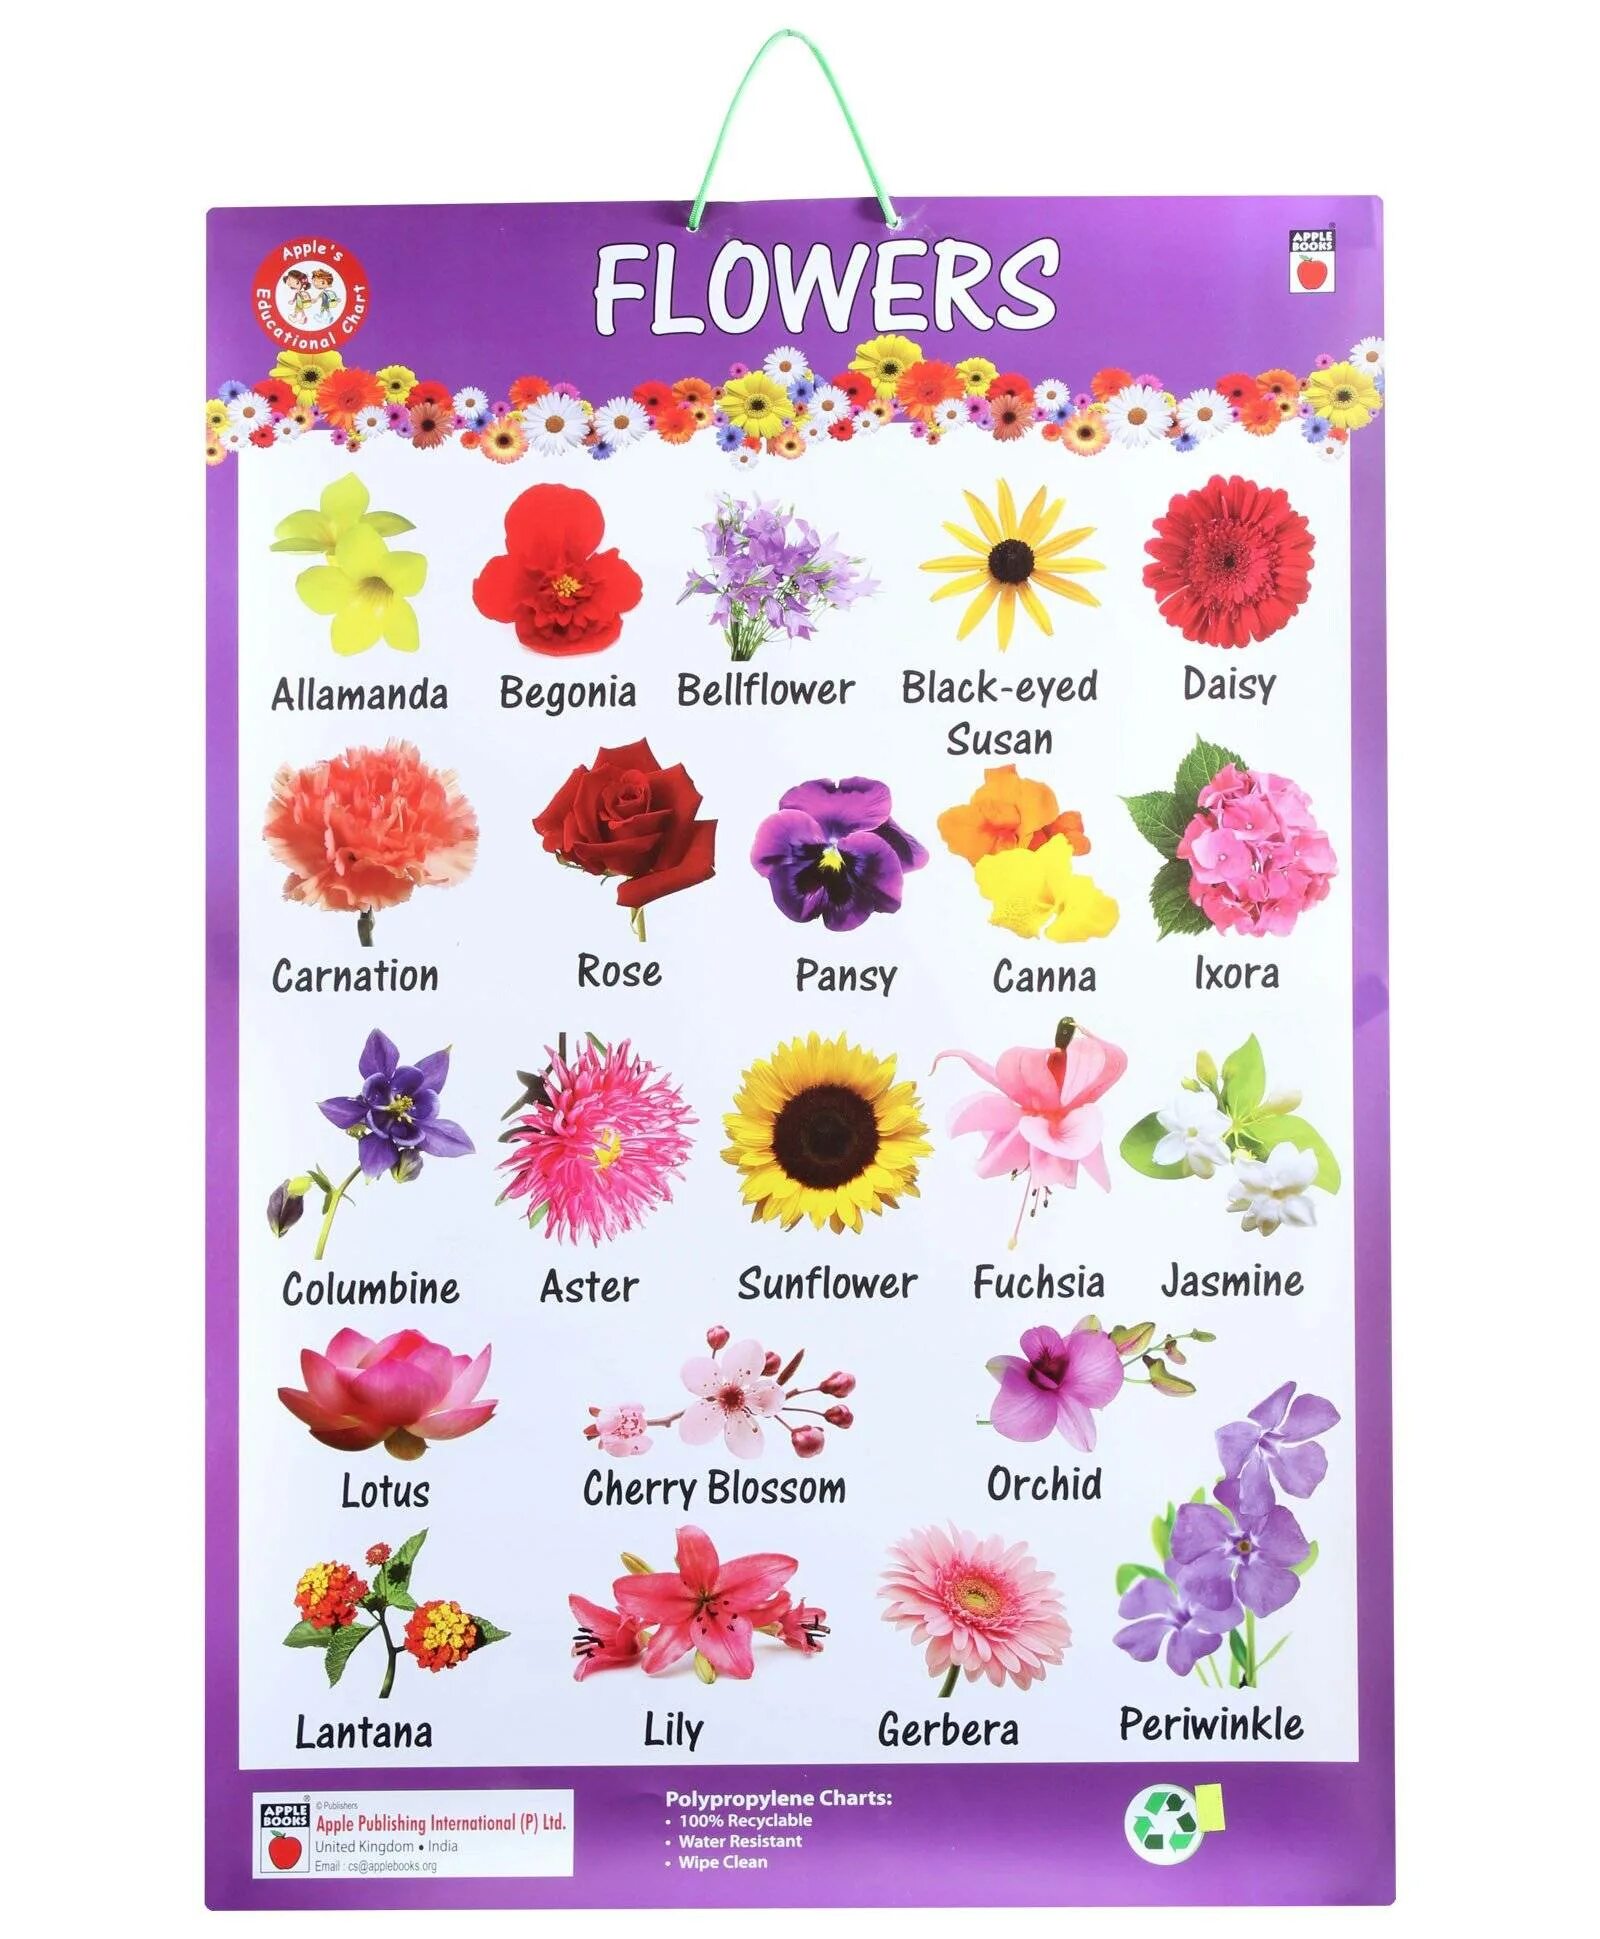 Название цветов. Названия цветов на английском. Цветы названия на английском. Названия цветов растений.